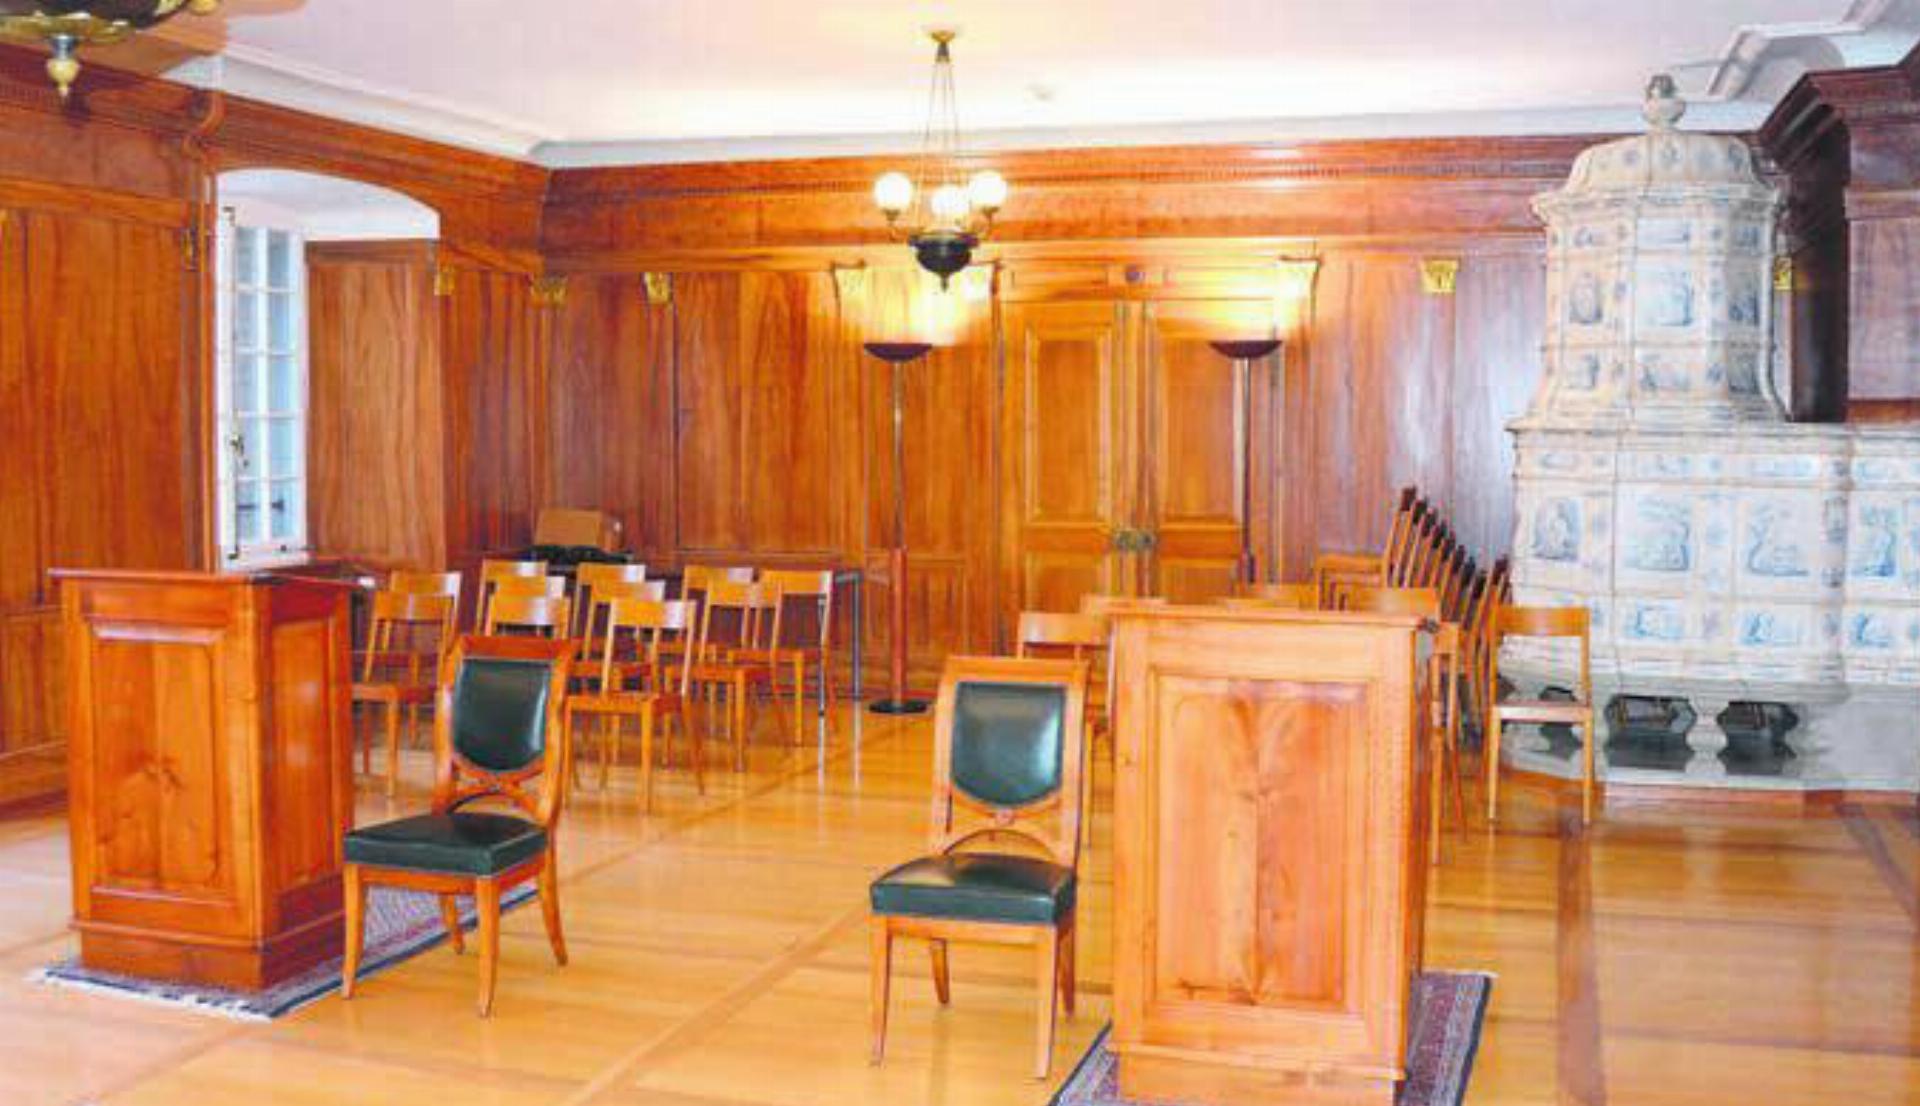 An der Urne wird entschieden, wer künftig als einer der sechs Bezirksrichter im Gerichtssaal in Bremgarten amtet. Bilder: Archiv/zg